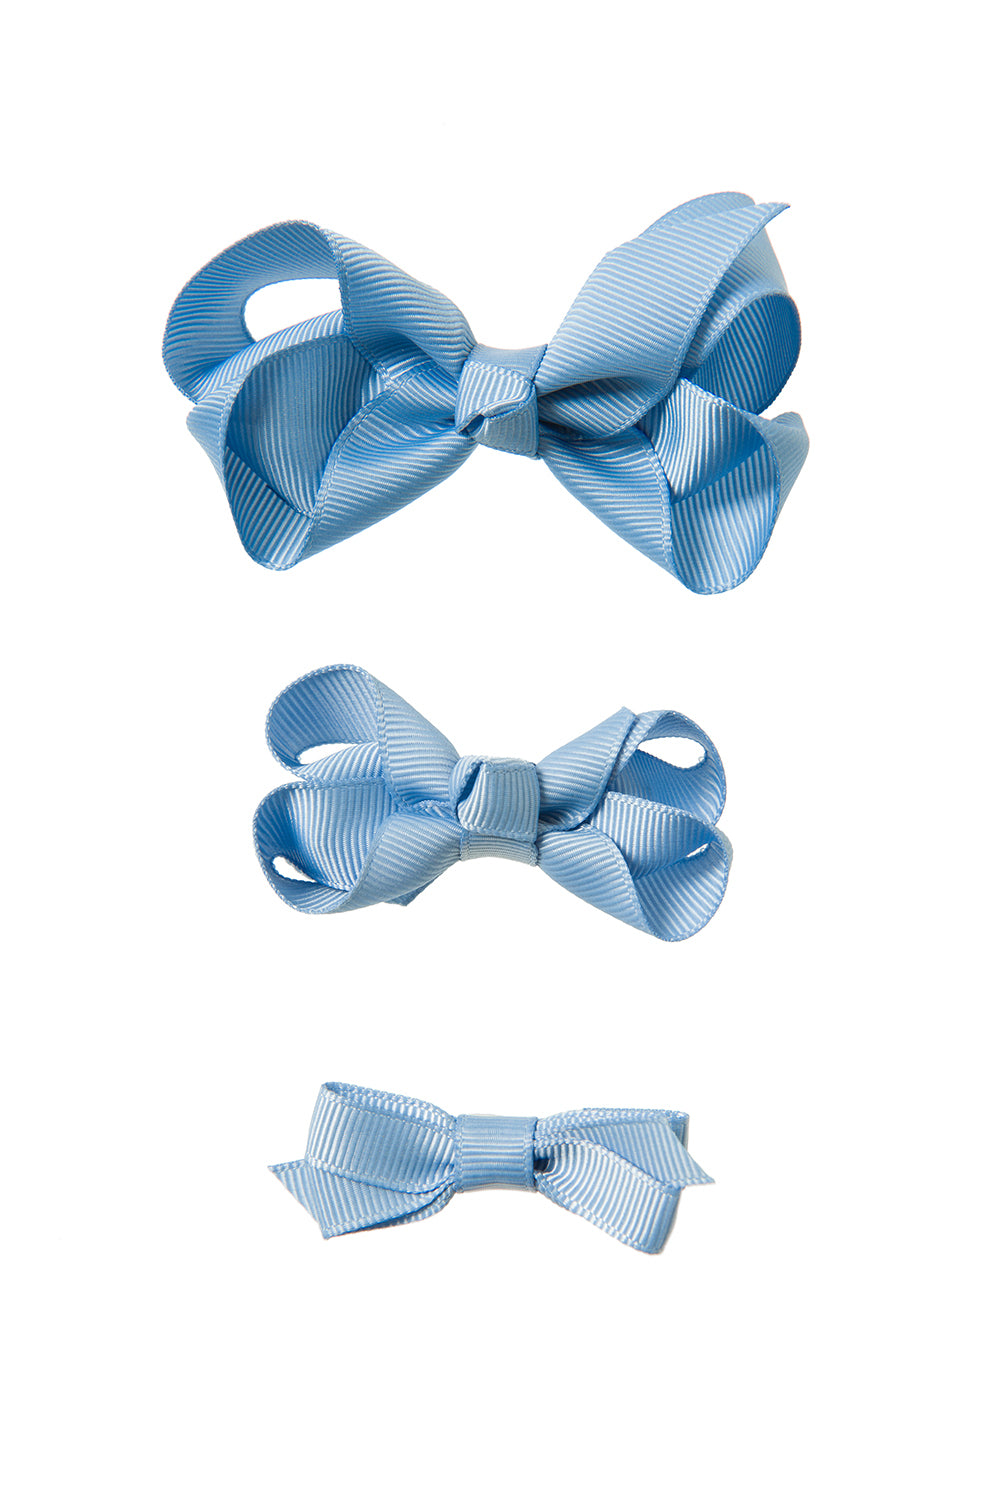 Sky Blue Hair bow clips